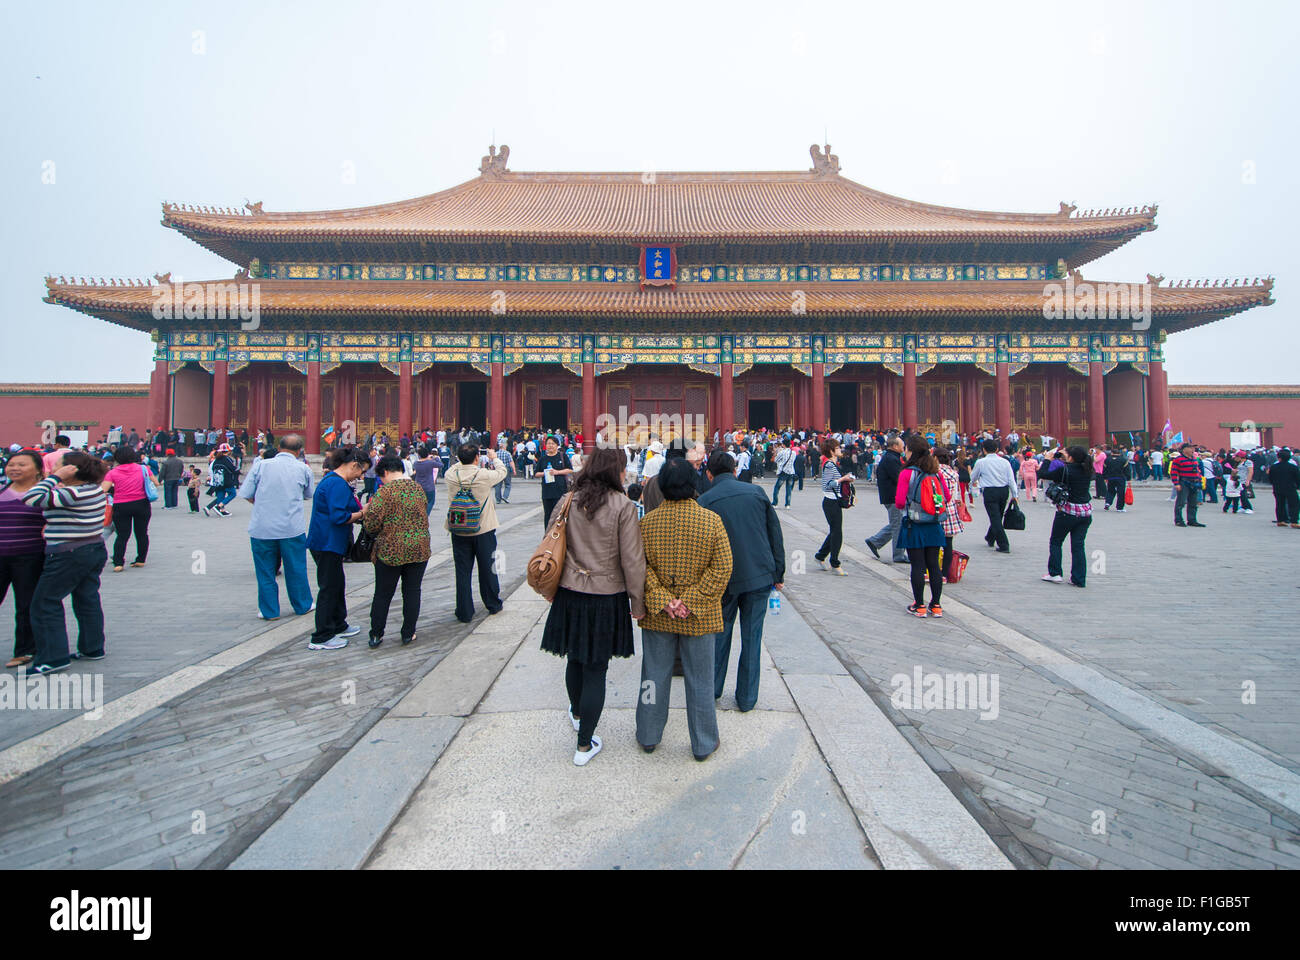 Forbidden City in Beijing. Stock Photo